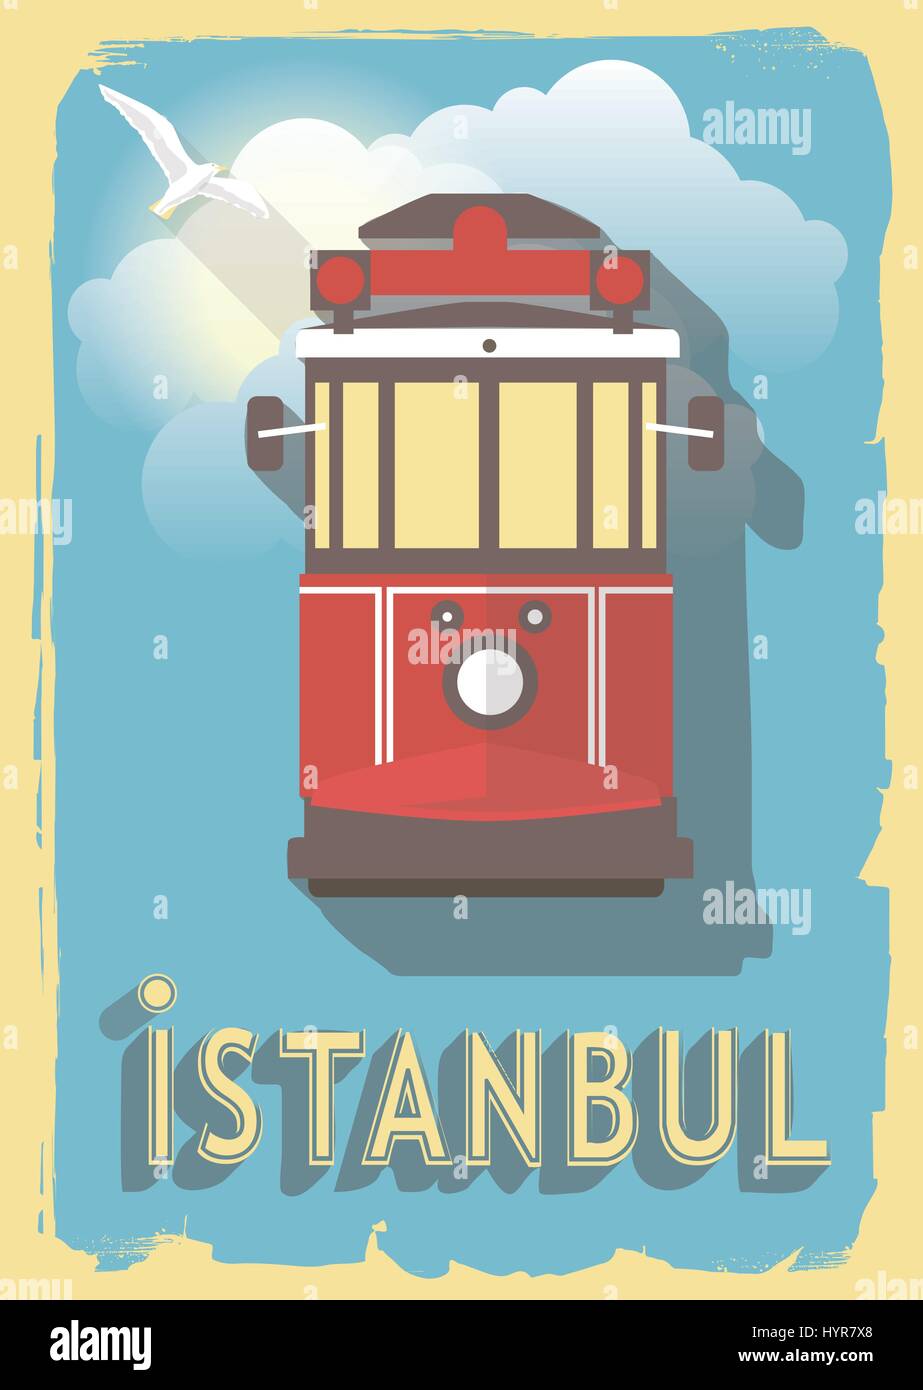 Illustrazione di vettore ferroviario di Istanbul Turchia su uno stile rétro poster o cartolina. Illustrazione Vettoriale